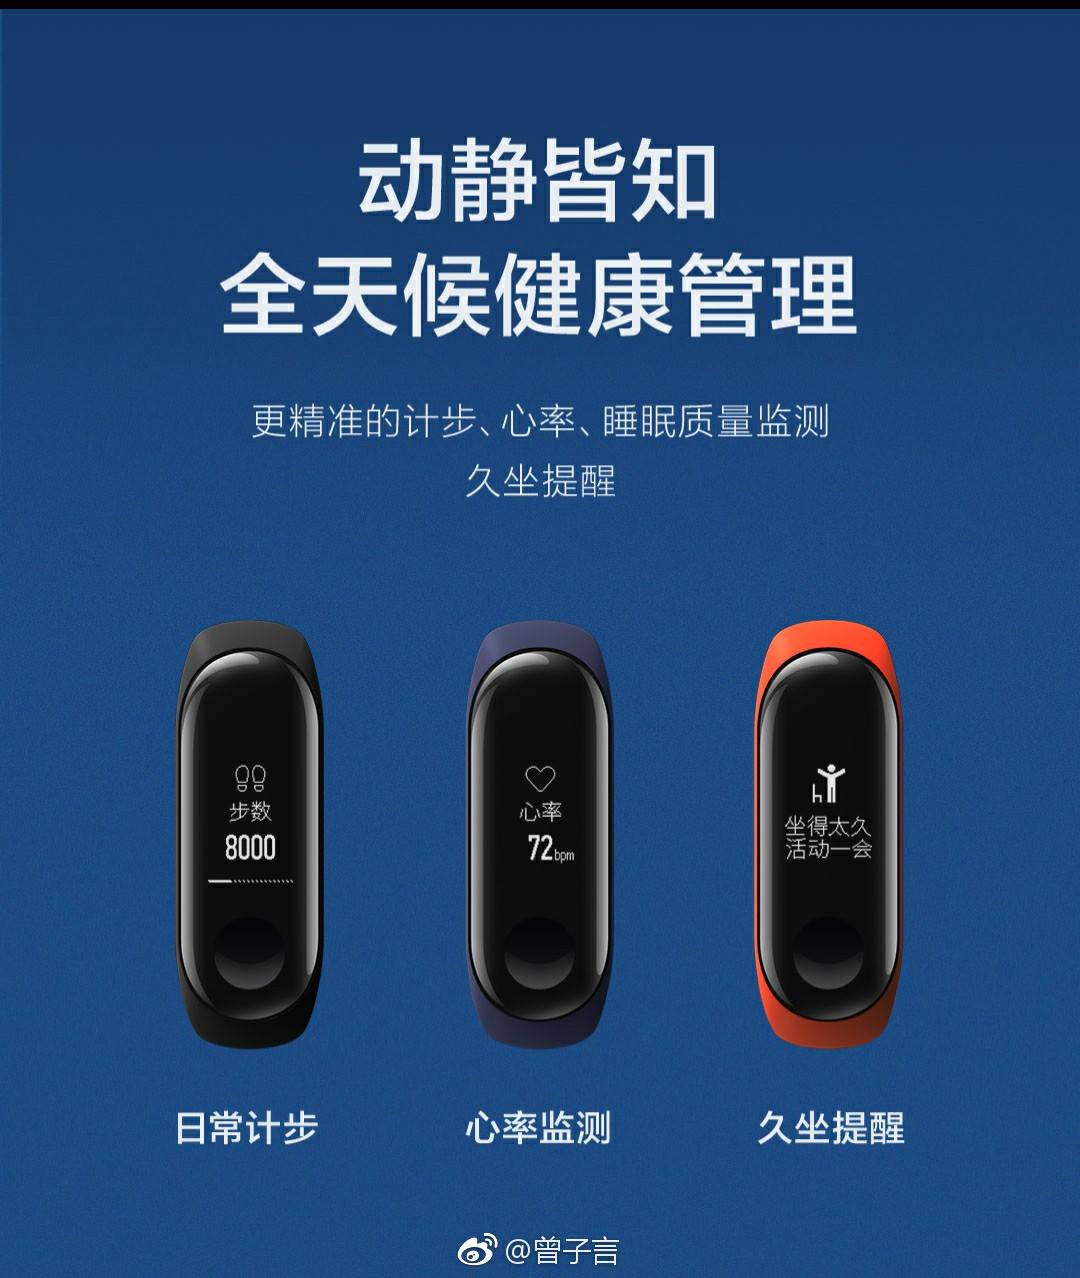 Xiaomi Mi Band 3 lộ
toàn bộ thông số trước giờ ra mắt